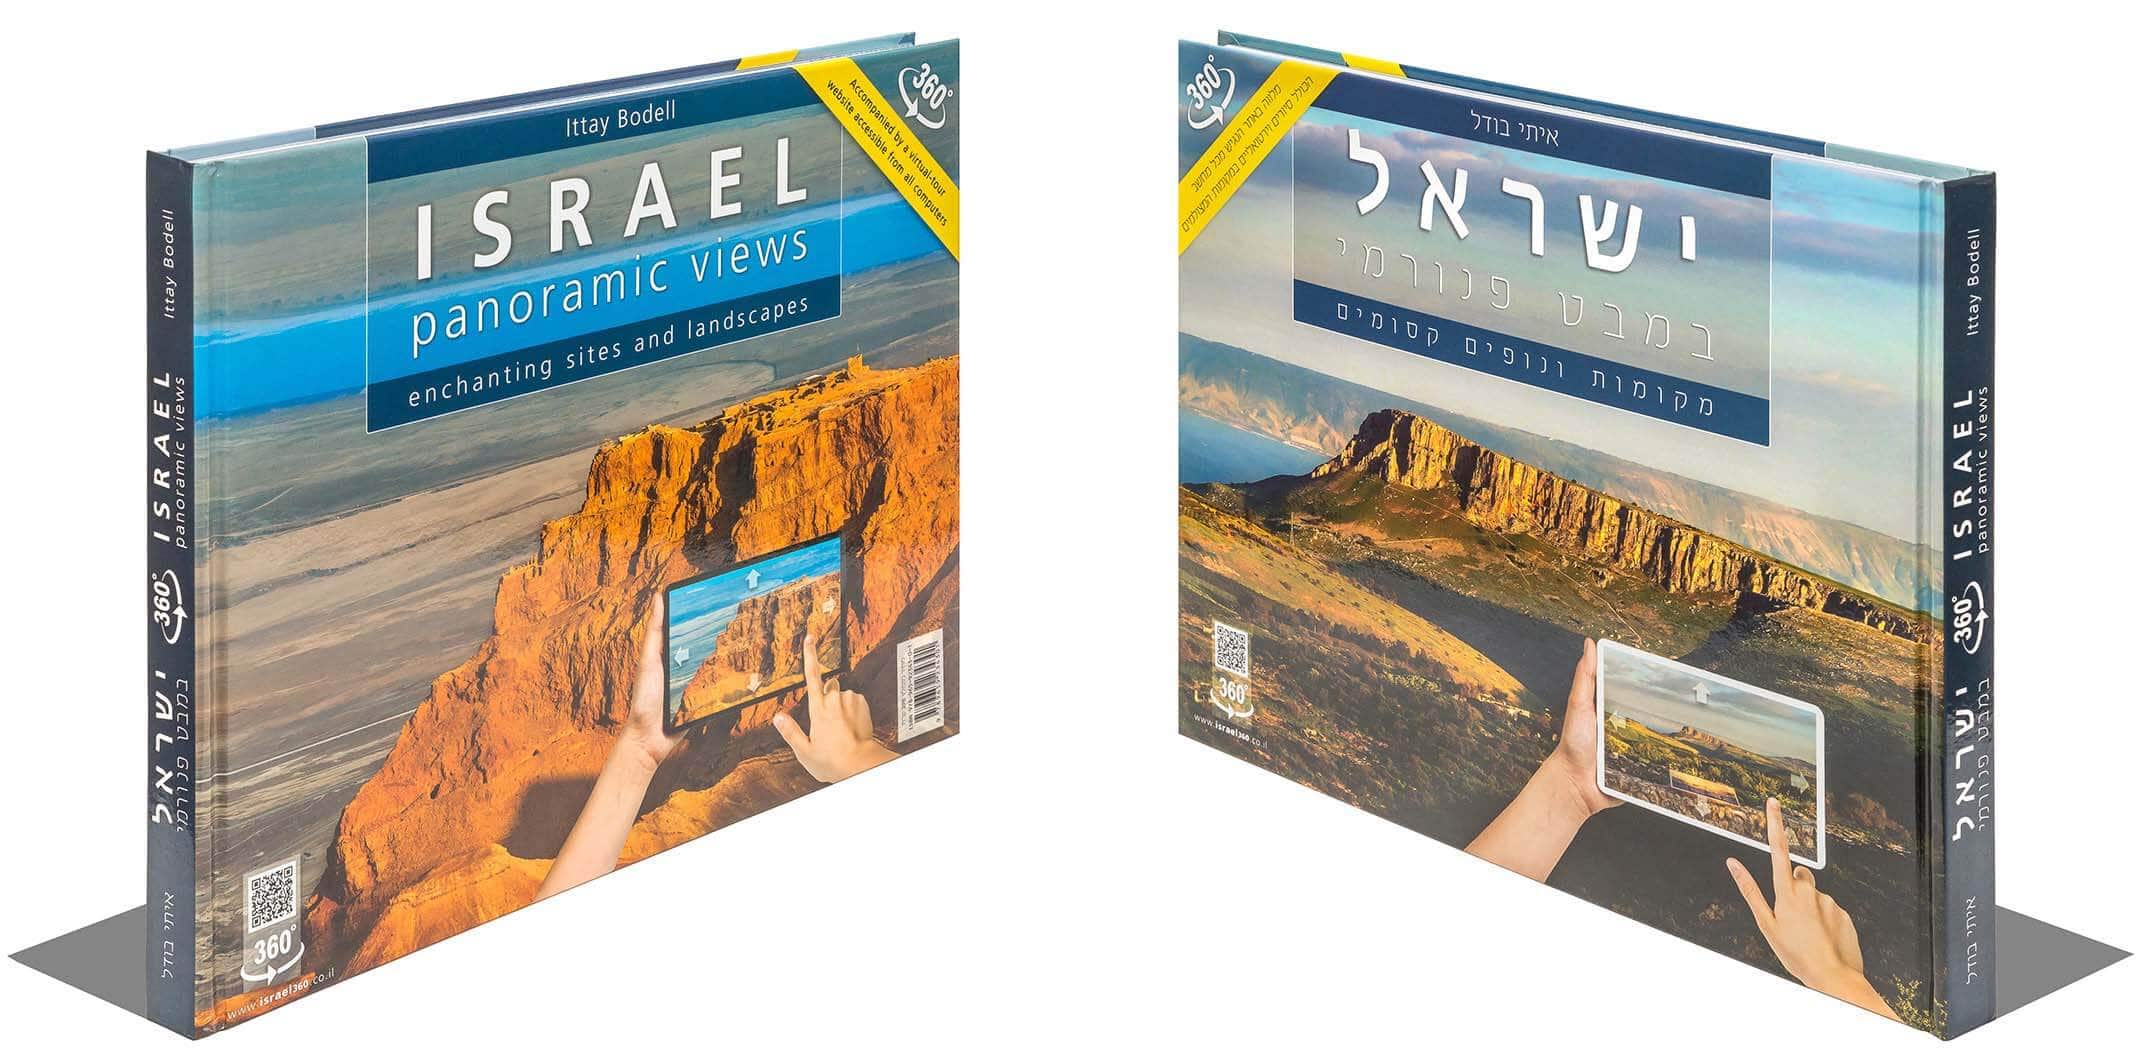 מהדורה מורחבת -ספר מתנה ישראלי לחו"ל